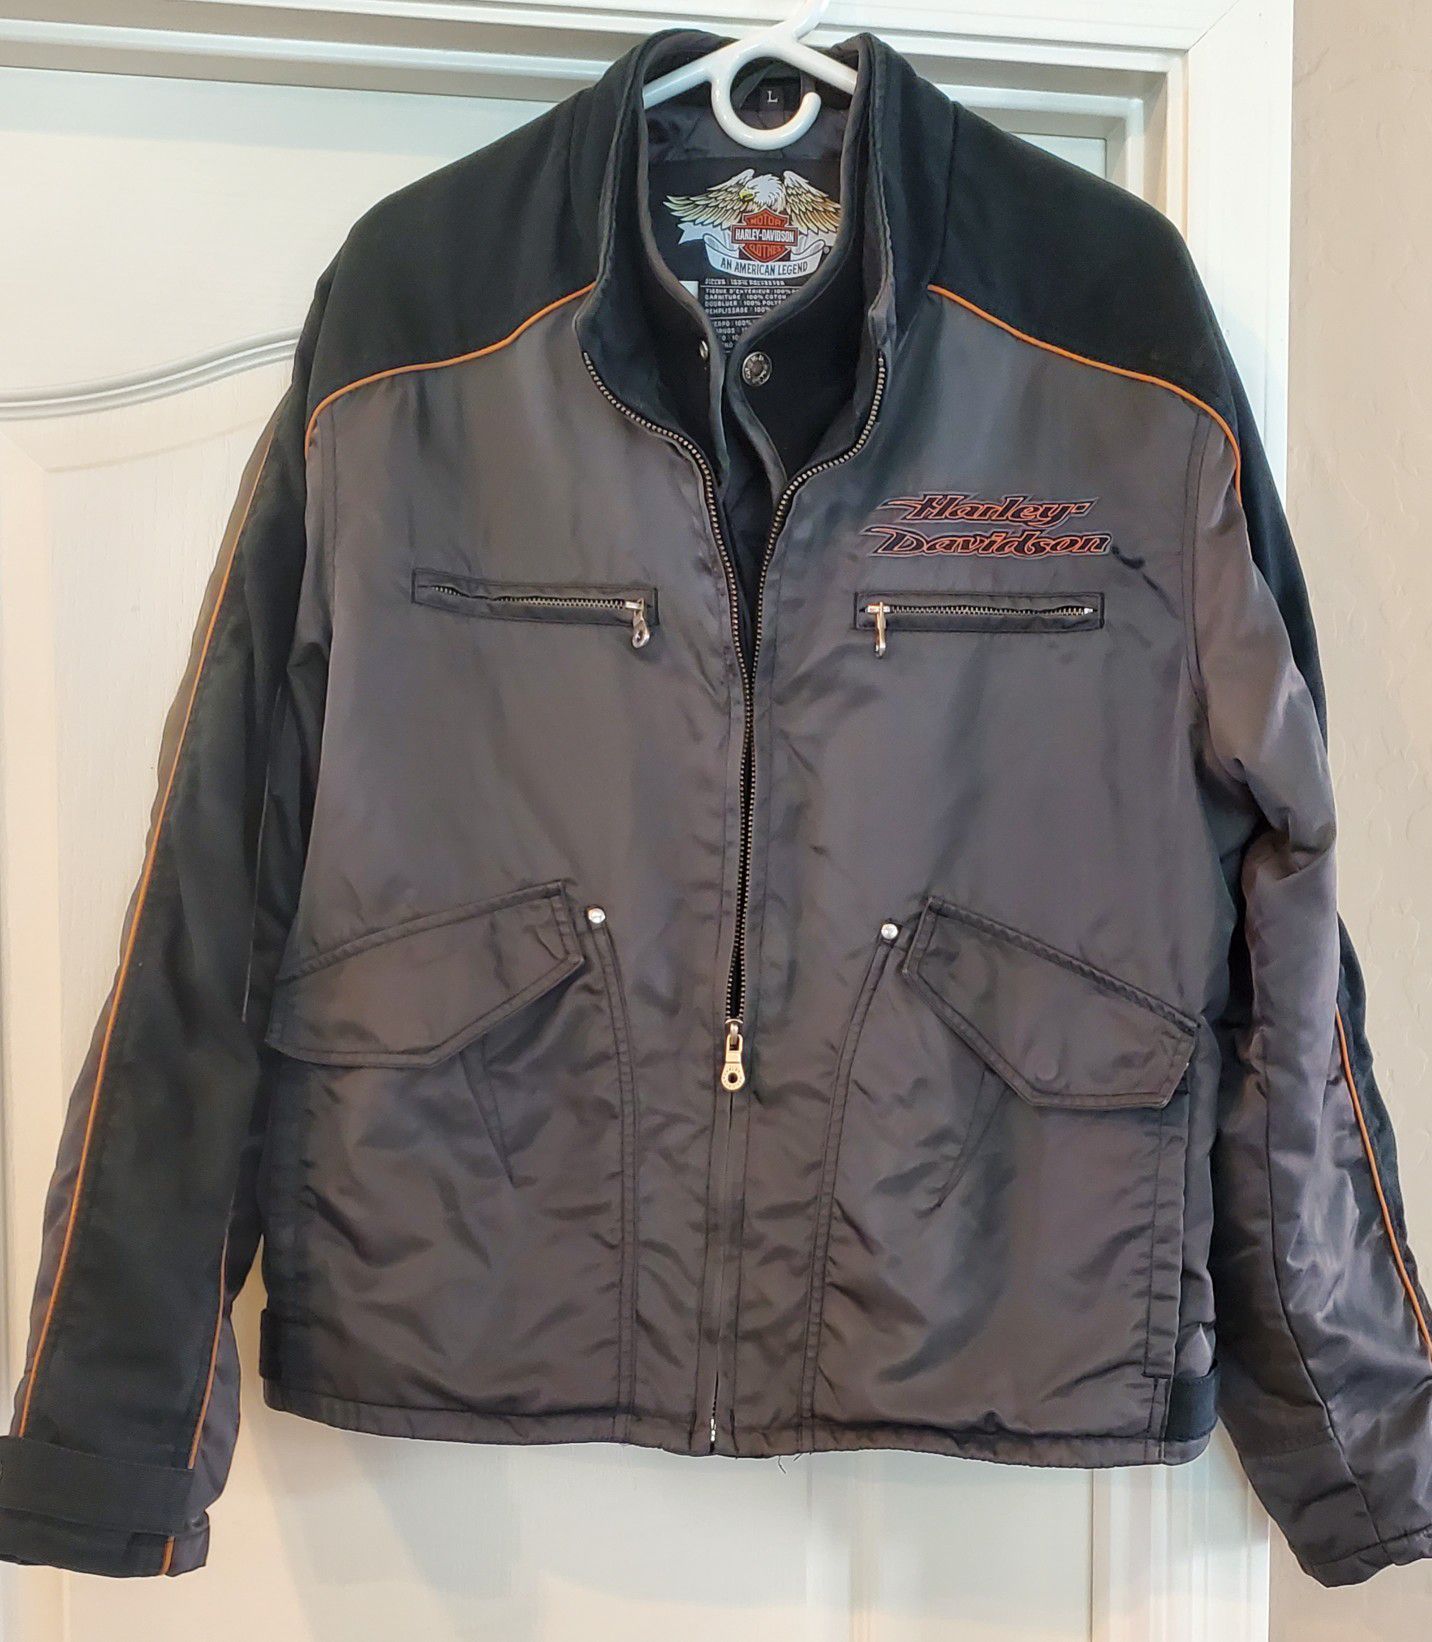 Harley Davidson Jacket size Large